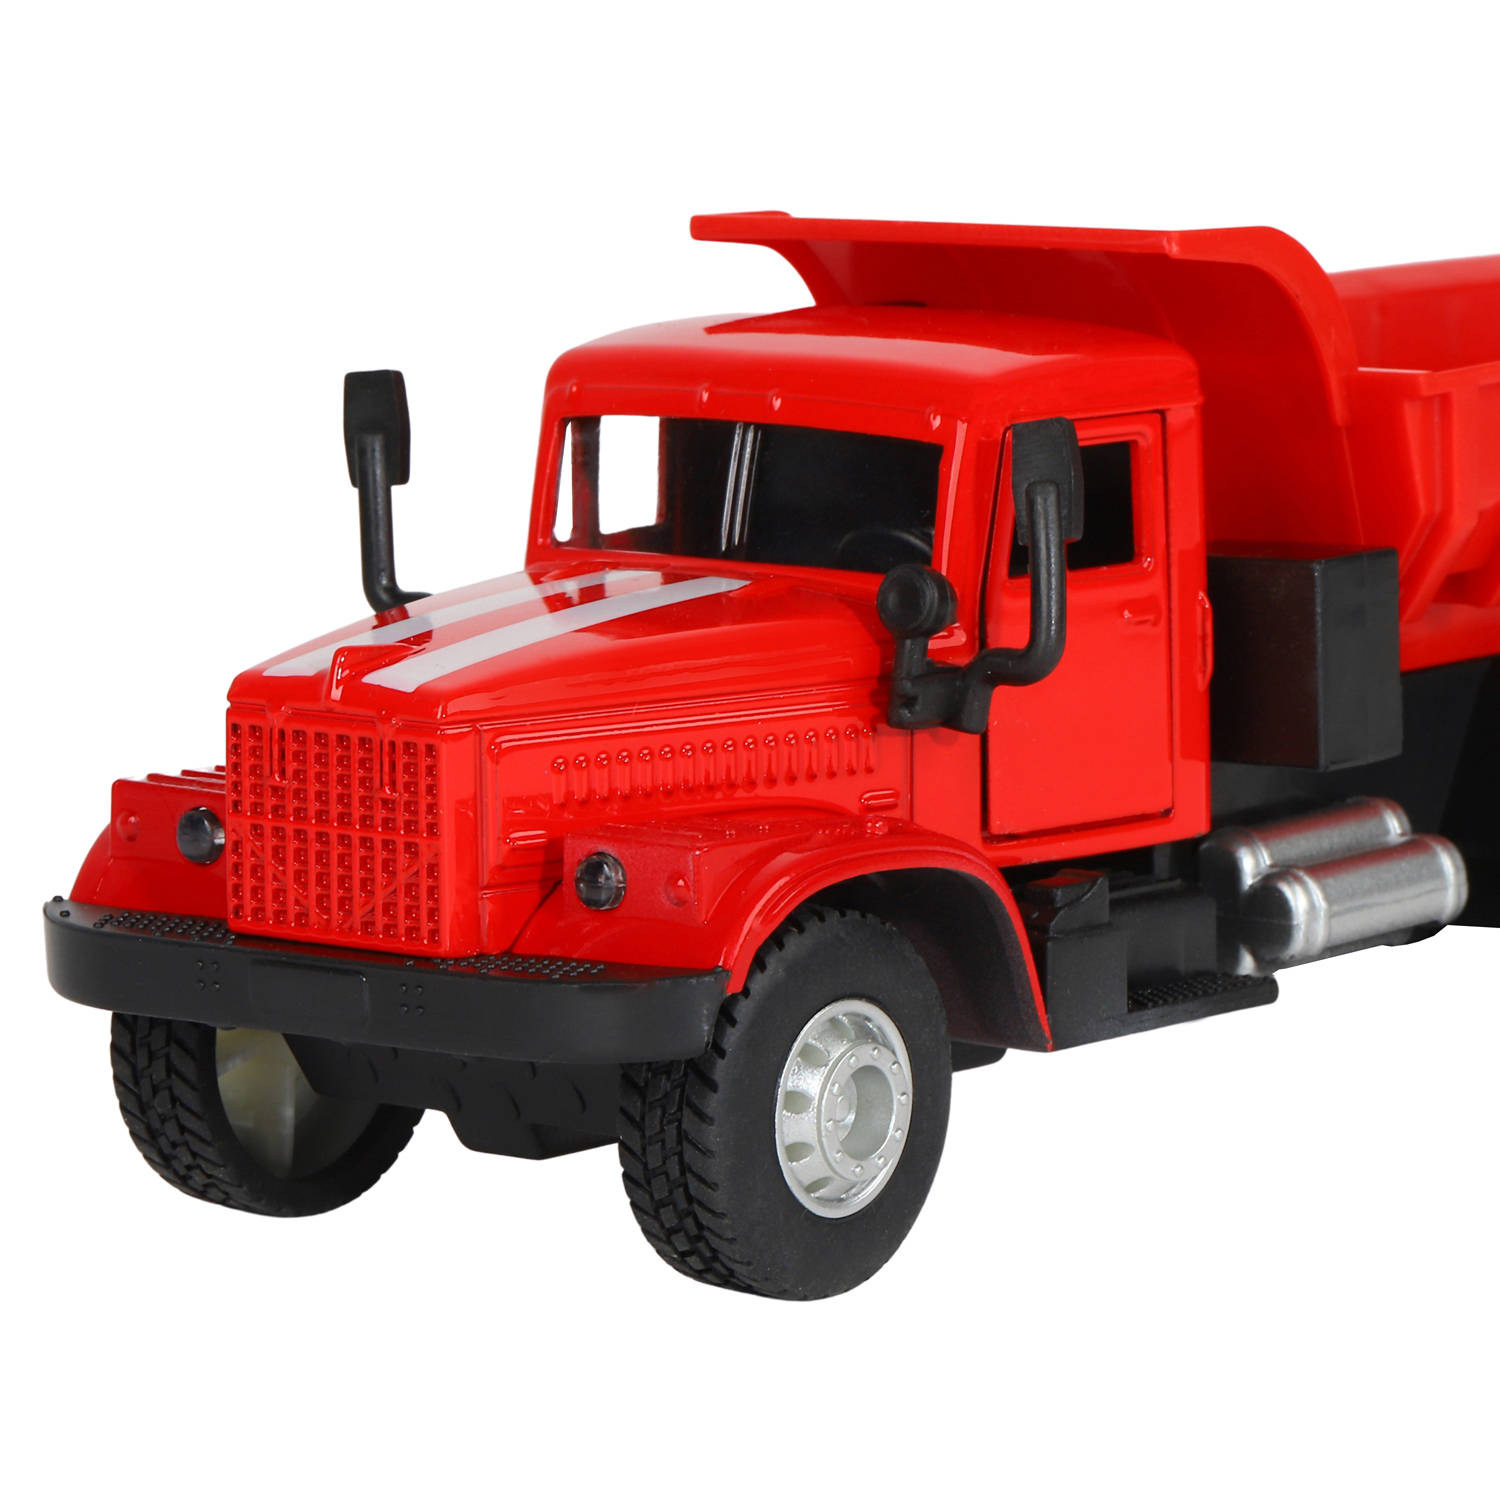 Грузовик 32. Красный тягач. Красный грузовик. Железный грузовик игрушка на пульте с откидным кузовом.